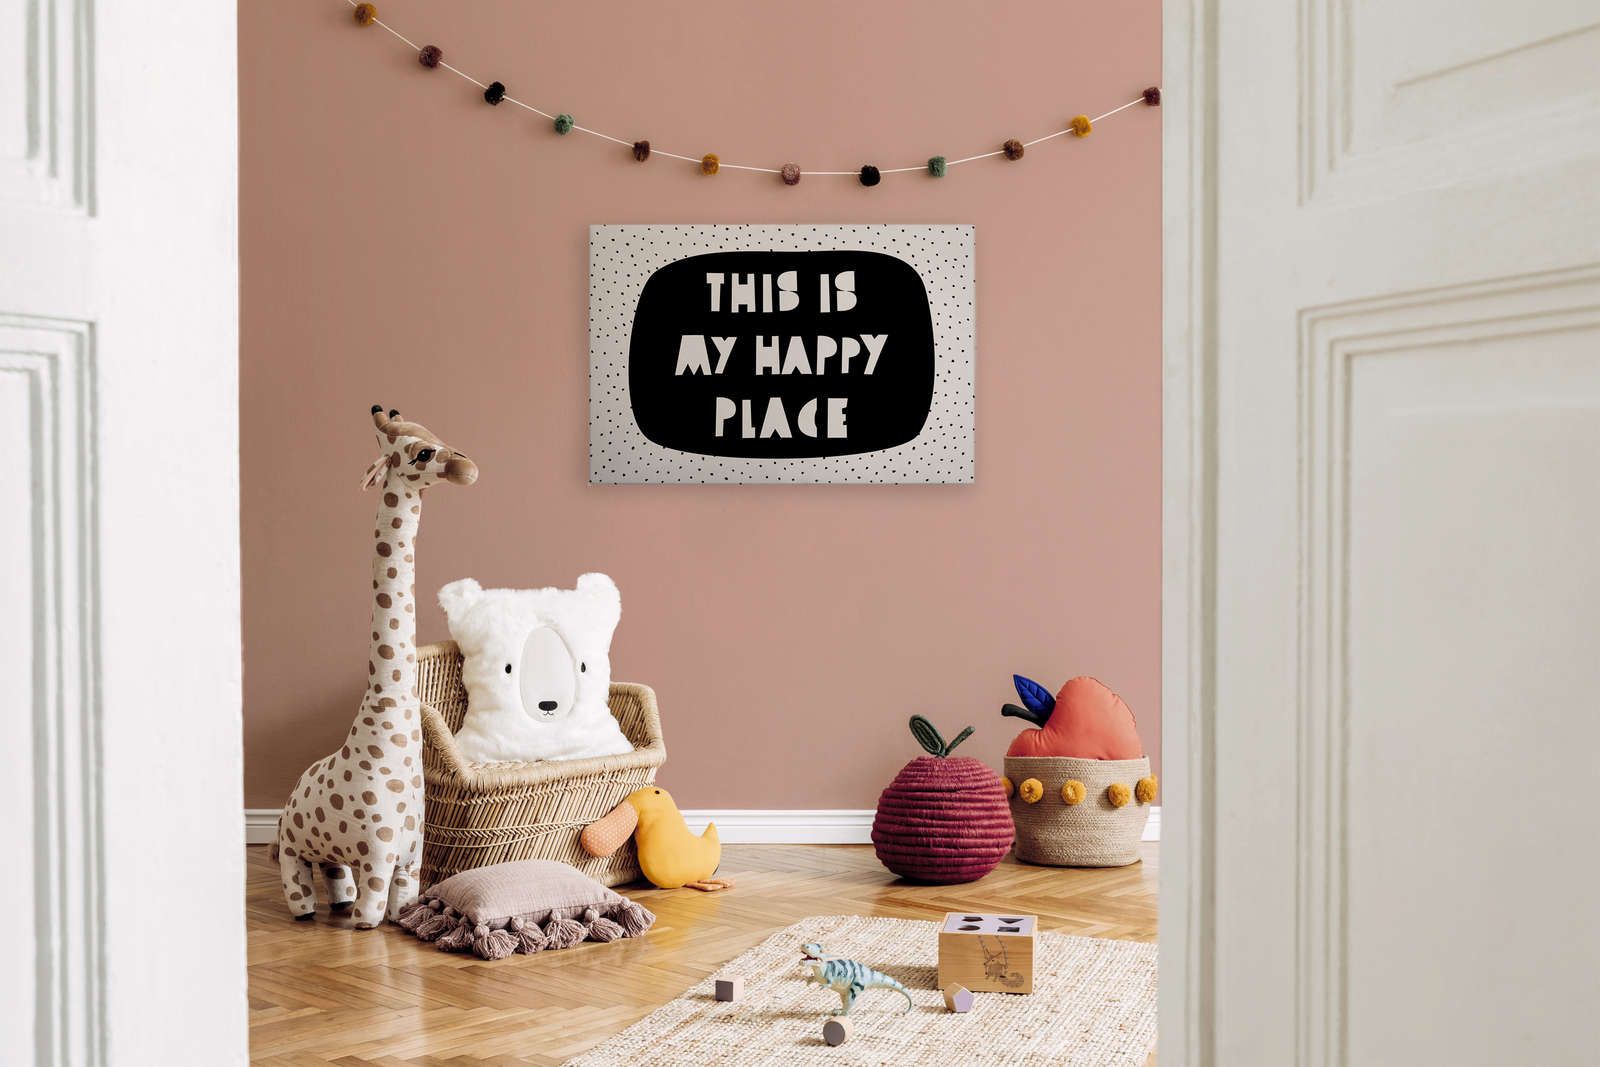             Canvas voor kinderkamer met opschrift "This is my happy place" - 90 cm x 60 cm
        